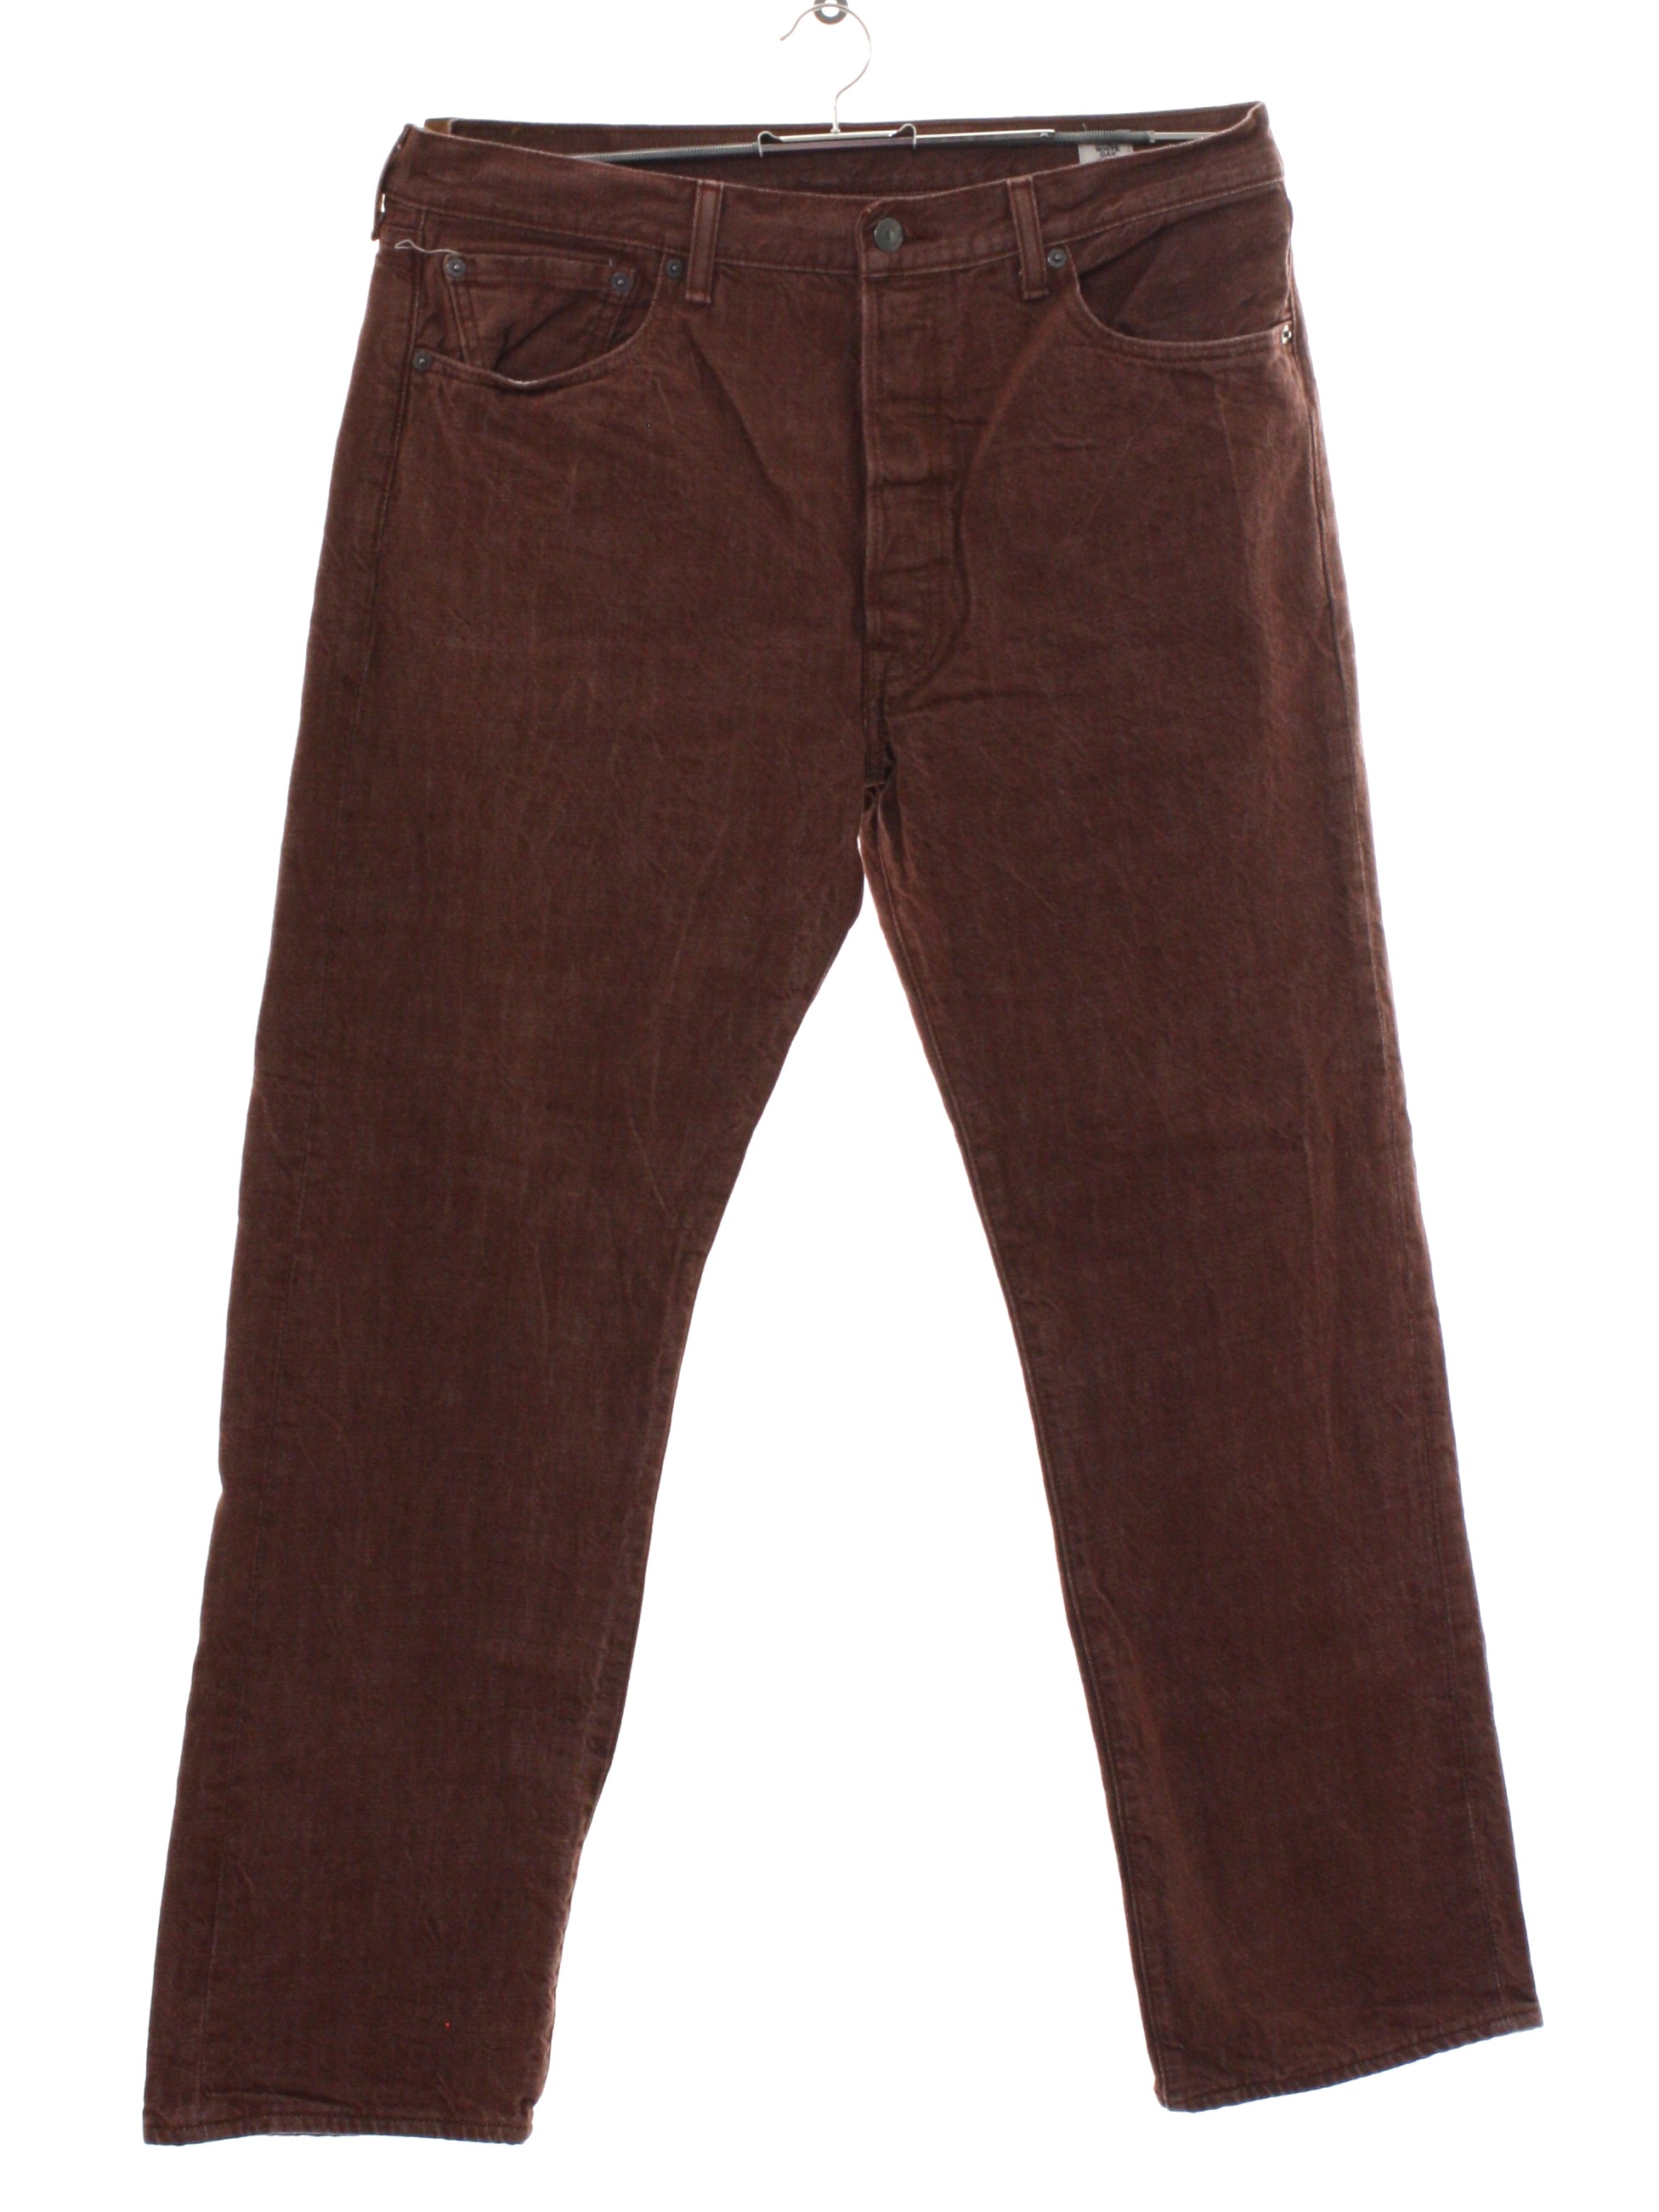 brown levis jeans